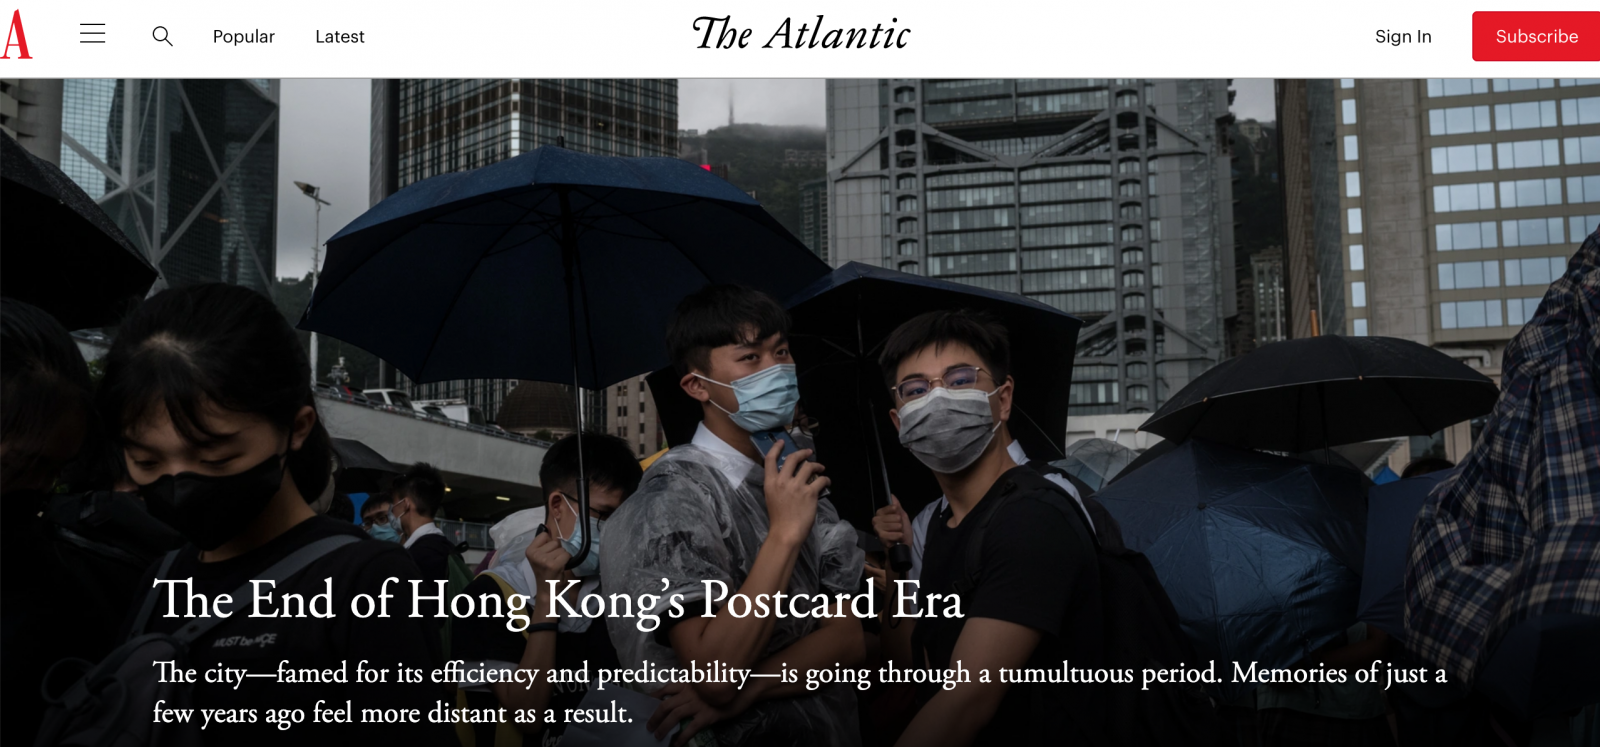 The Atlantic - The End of Hong Kong's Postcard Era